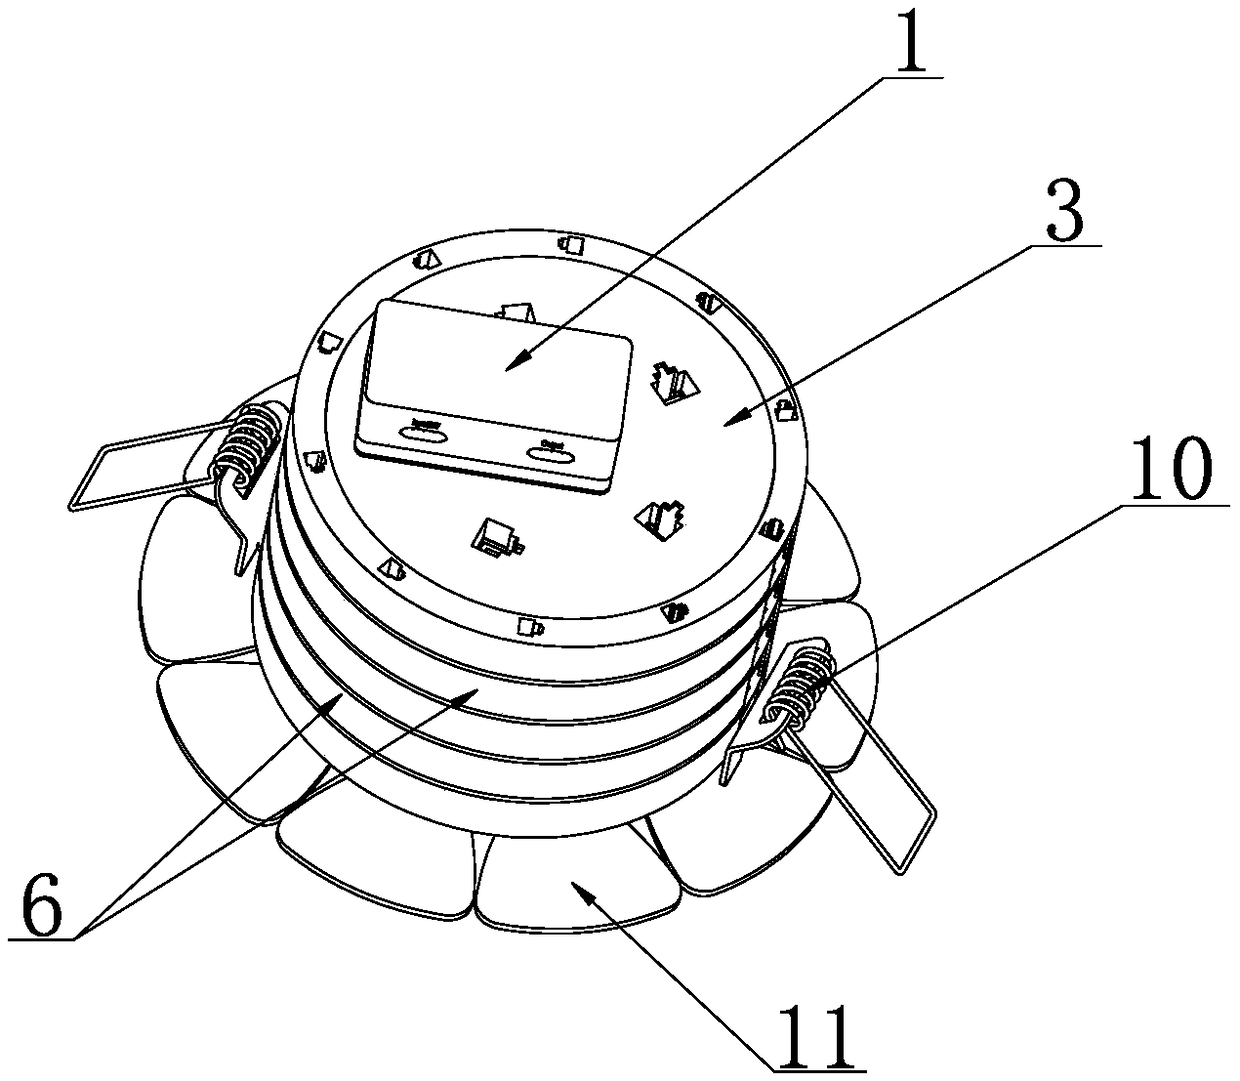 A modular circular lighting fixture and its assembly method